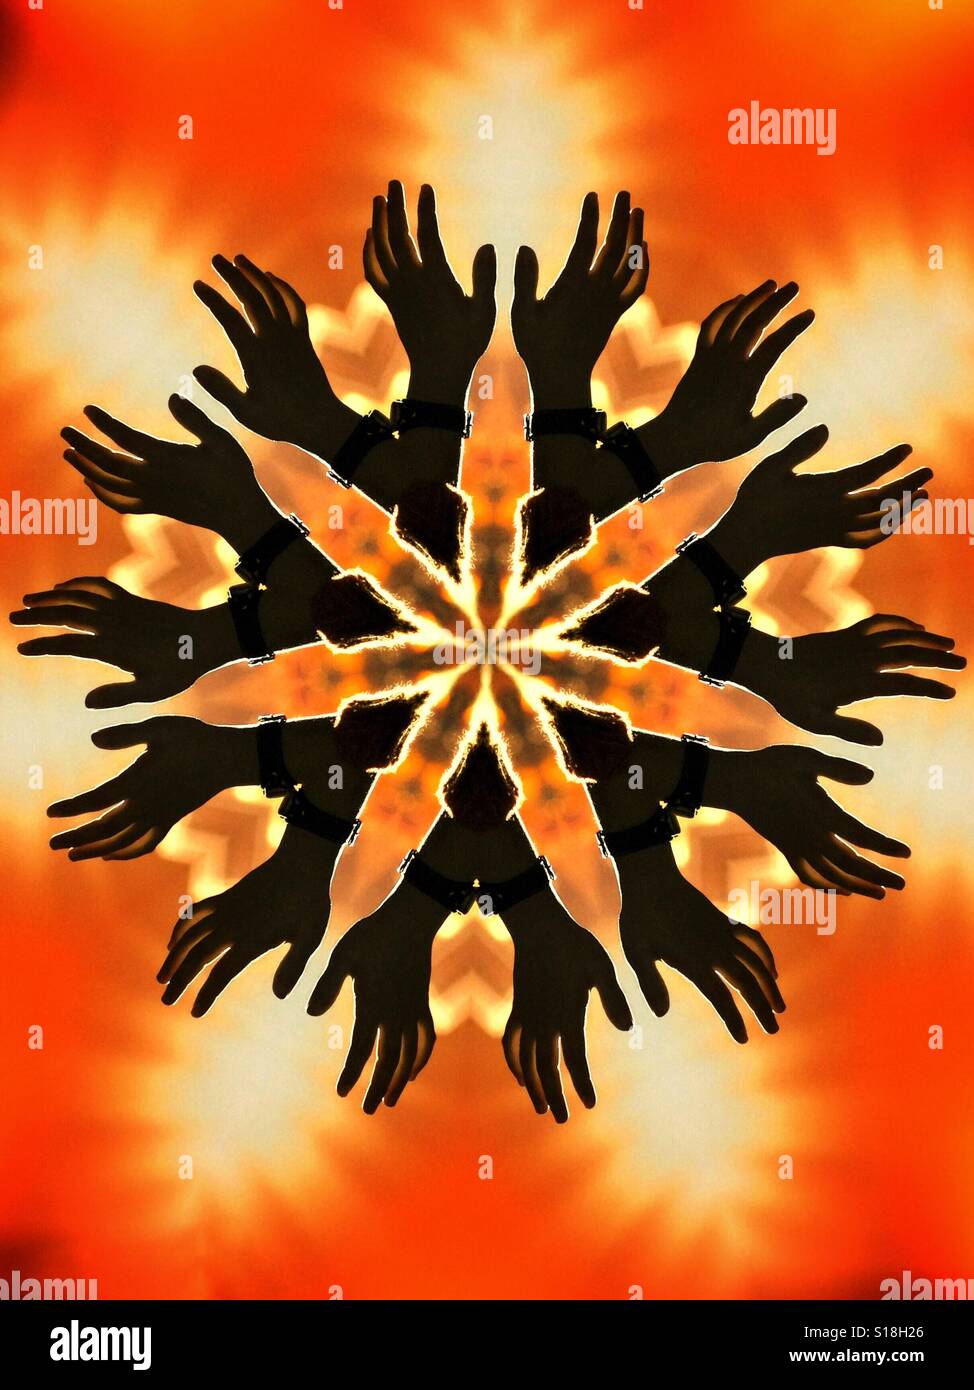 Ein abstraktes kaleidoskopartigen Bild mit Silhouette Hände auf einem feurigen orange Hintergrund Stockfoto